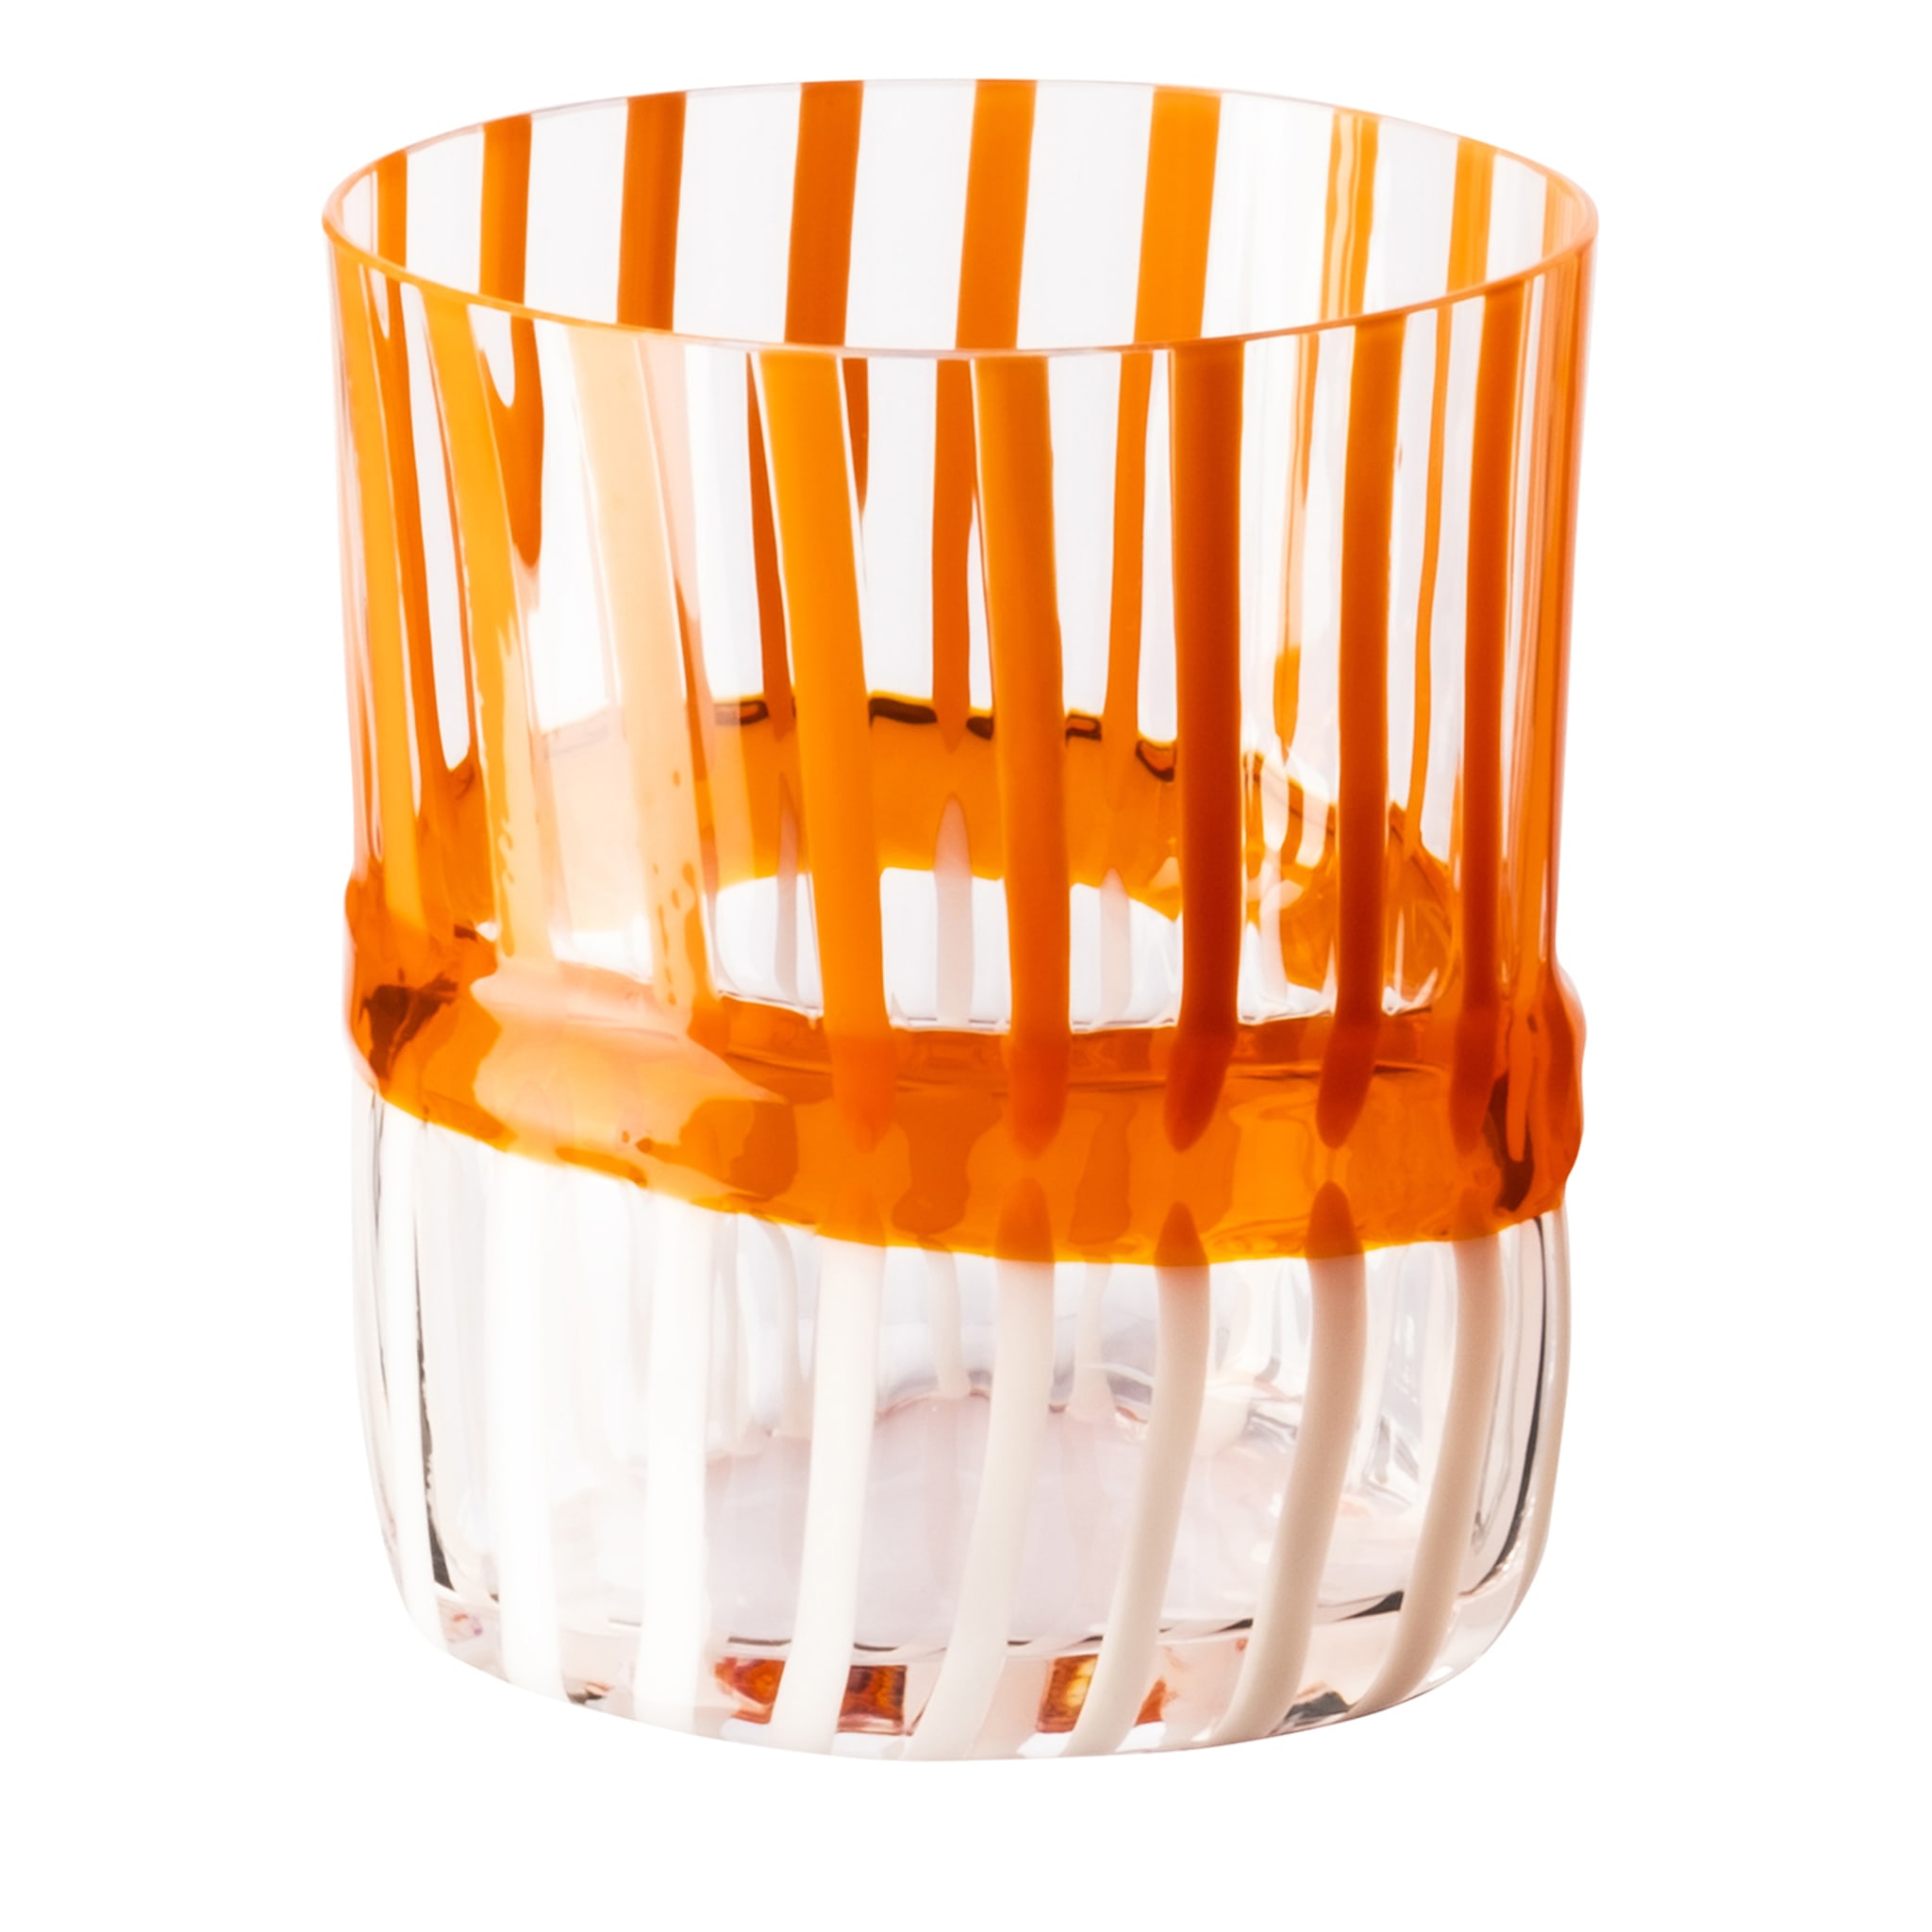 Bora Oval-Cut Striped White&Orange Glass by Carlo Moretti - Main view